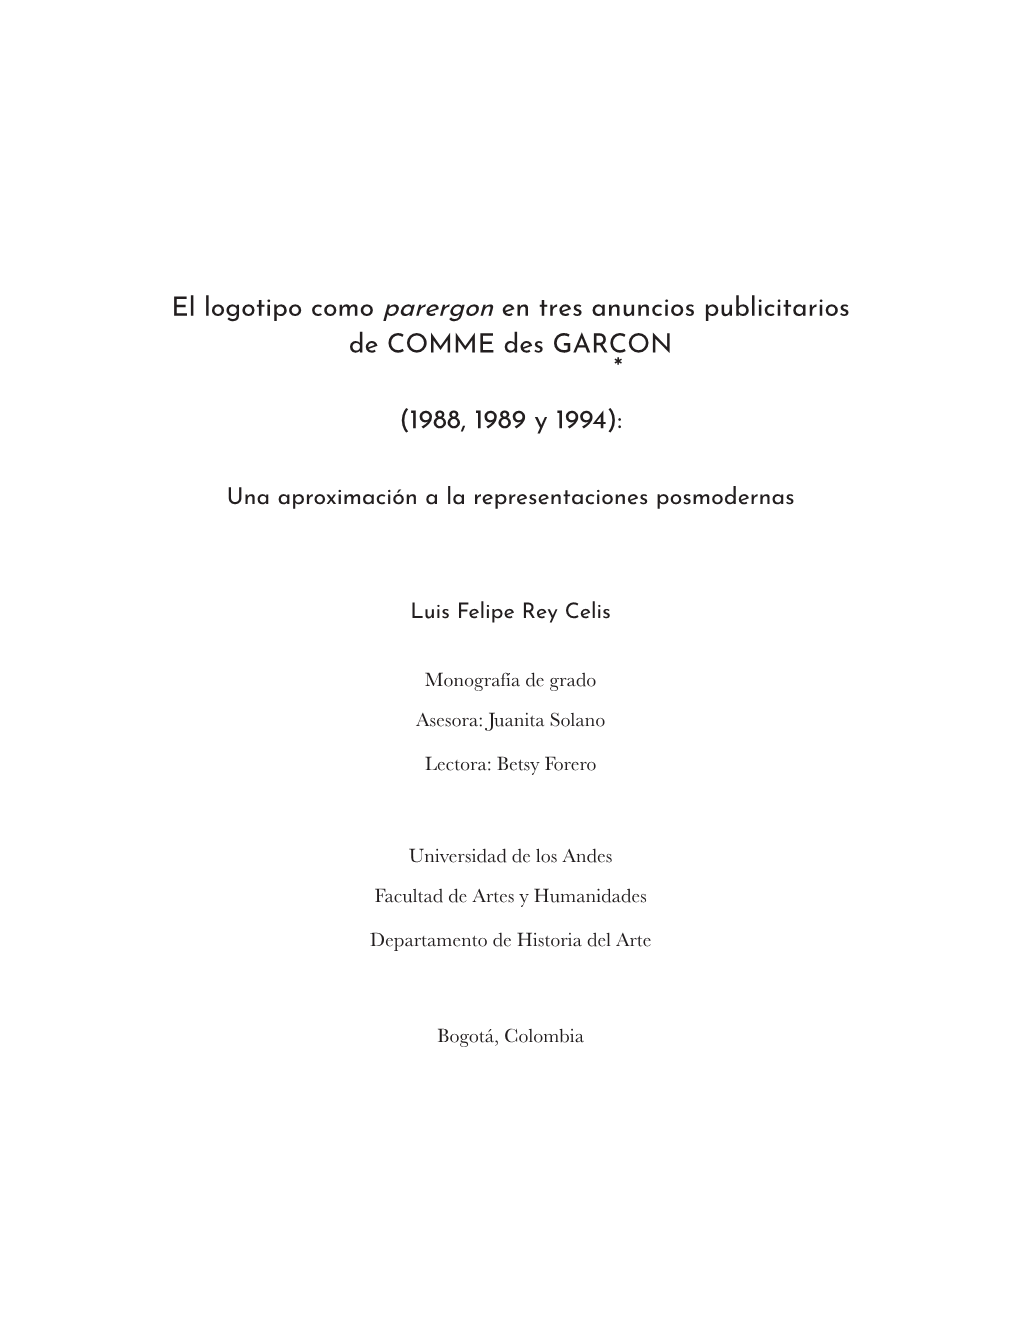 El Logotipo Como Parergon En Tres Anuncios Publicitarios De COMME Des GARCON * (1988, 1989 Y 1994)